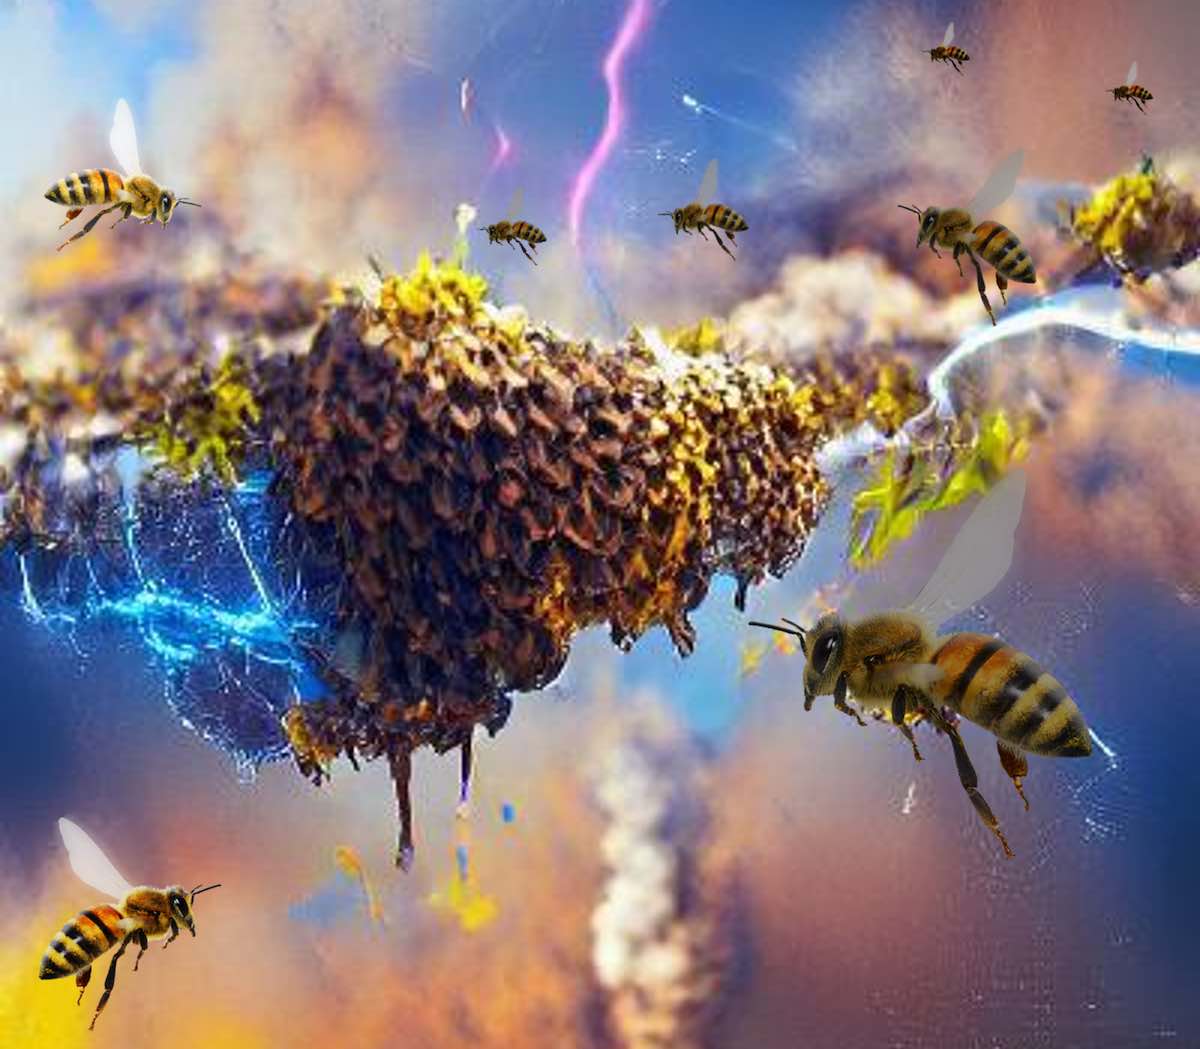 Las abejas pueden producir en conjunto tanta carga eléctrica atmosférica como una nube de tormenta